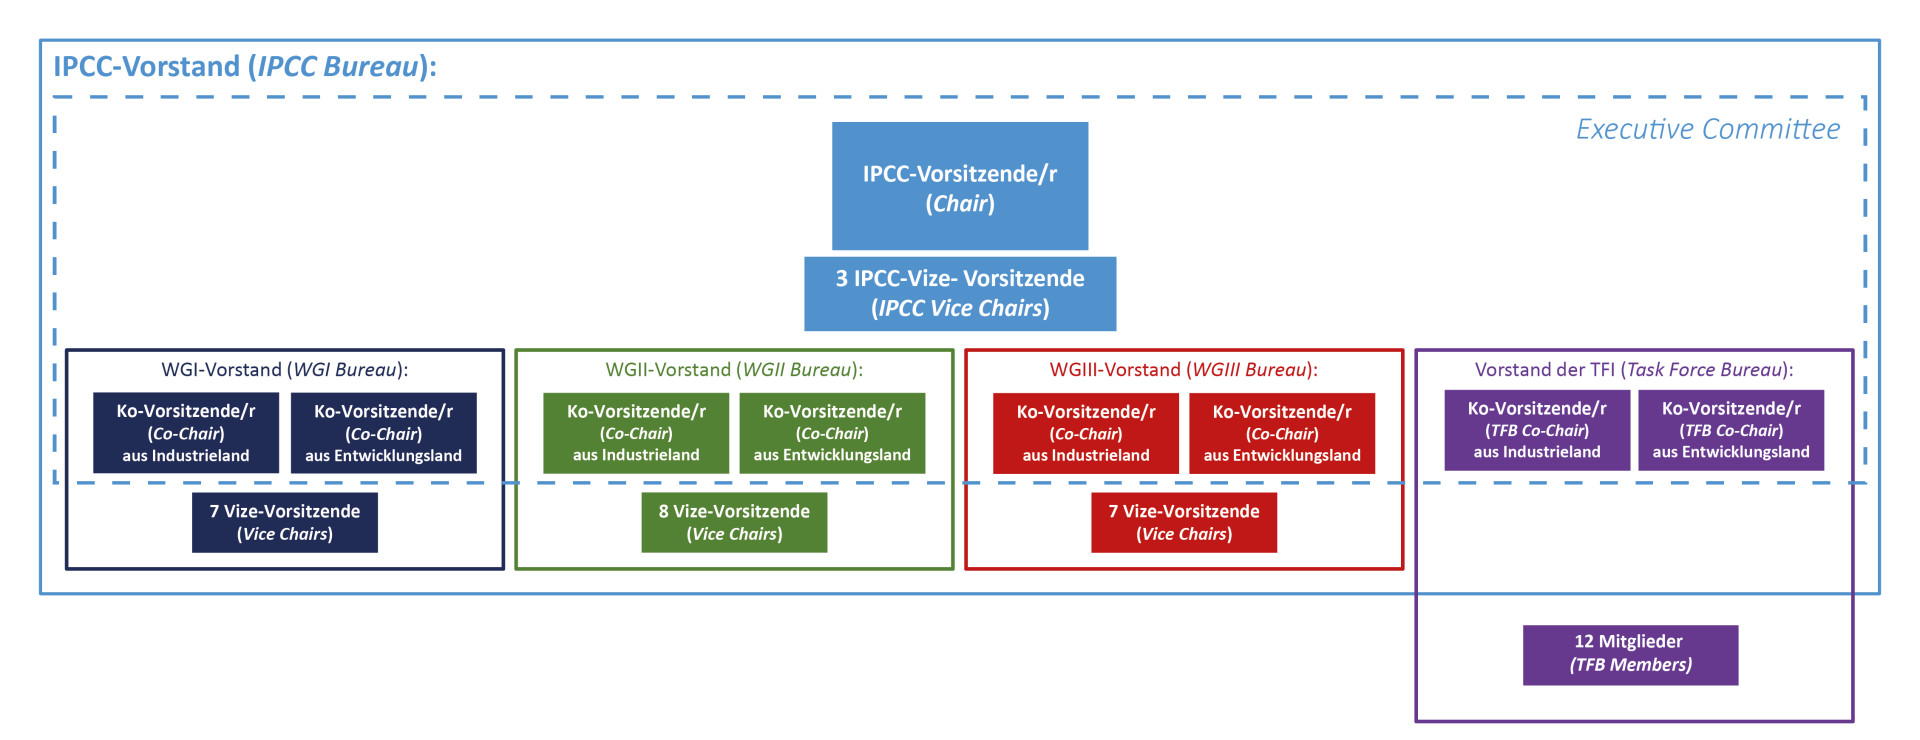 Eine Grafik, die den IPCC-Vorstand darstellt